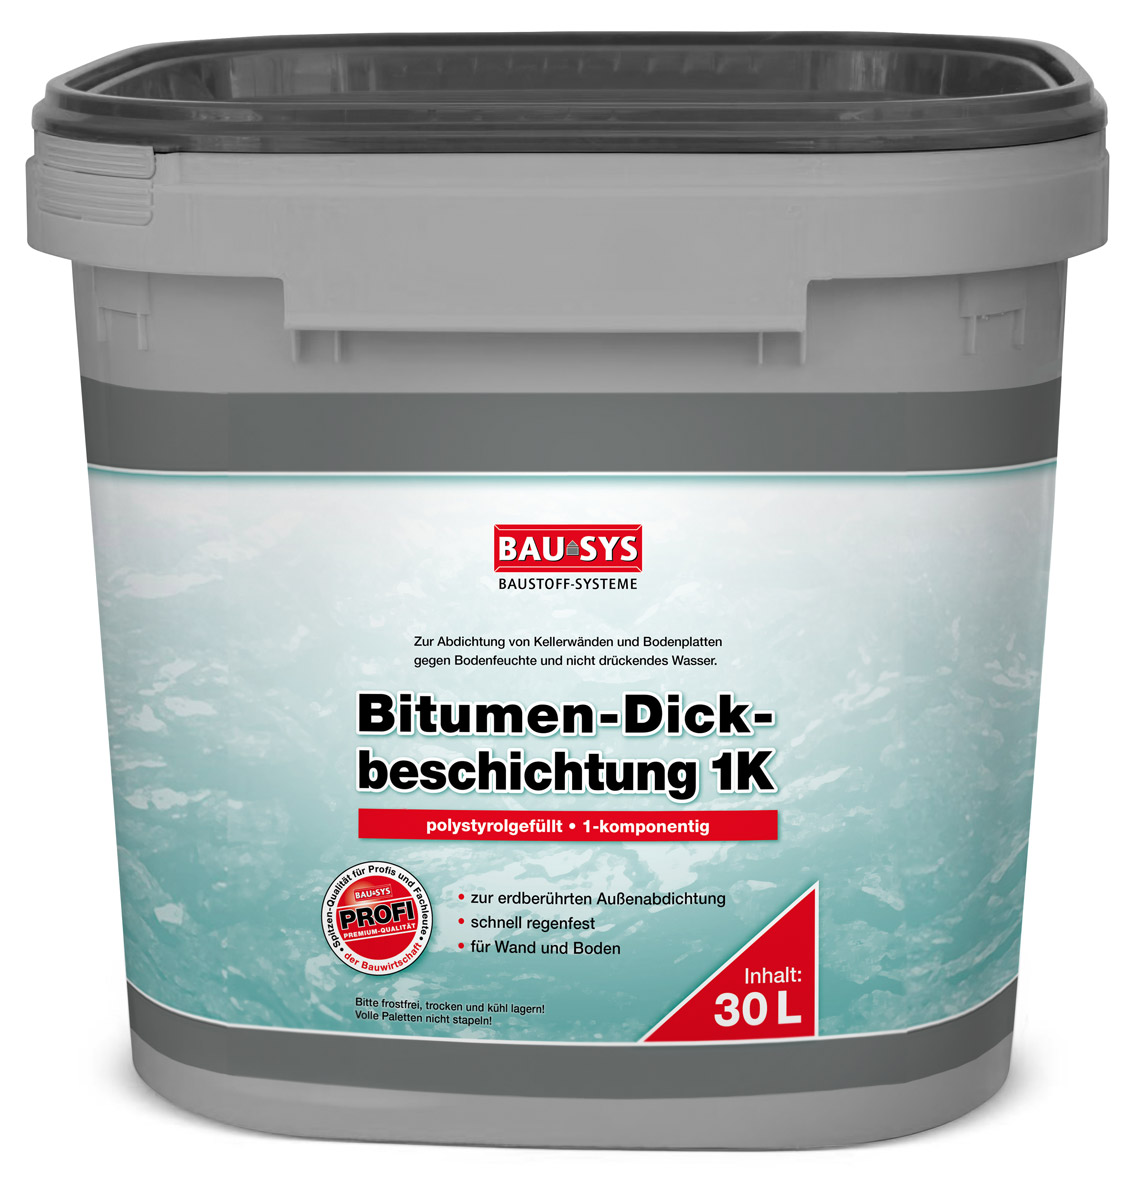 BAUSYS Bitumen-Dickbeschichtung 1K